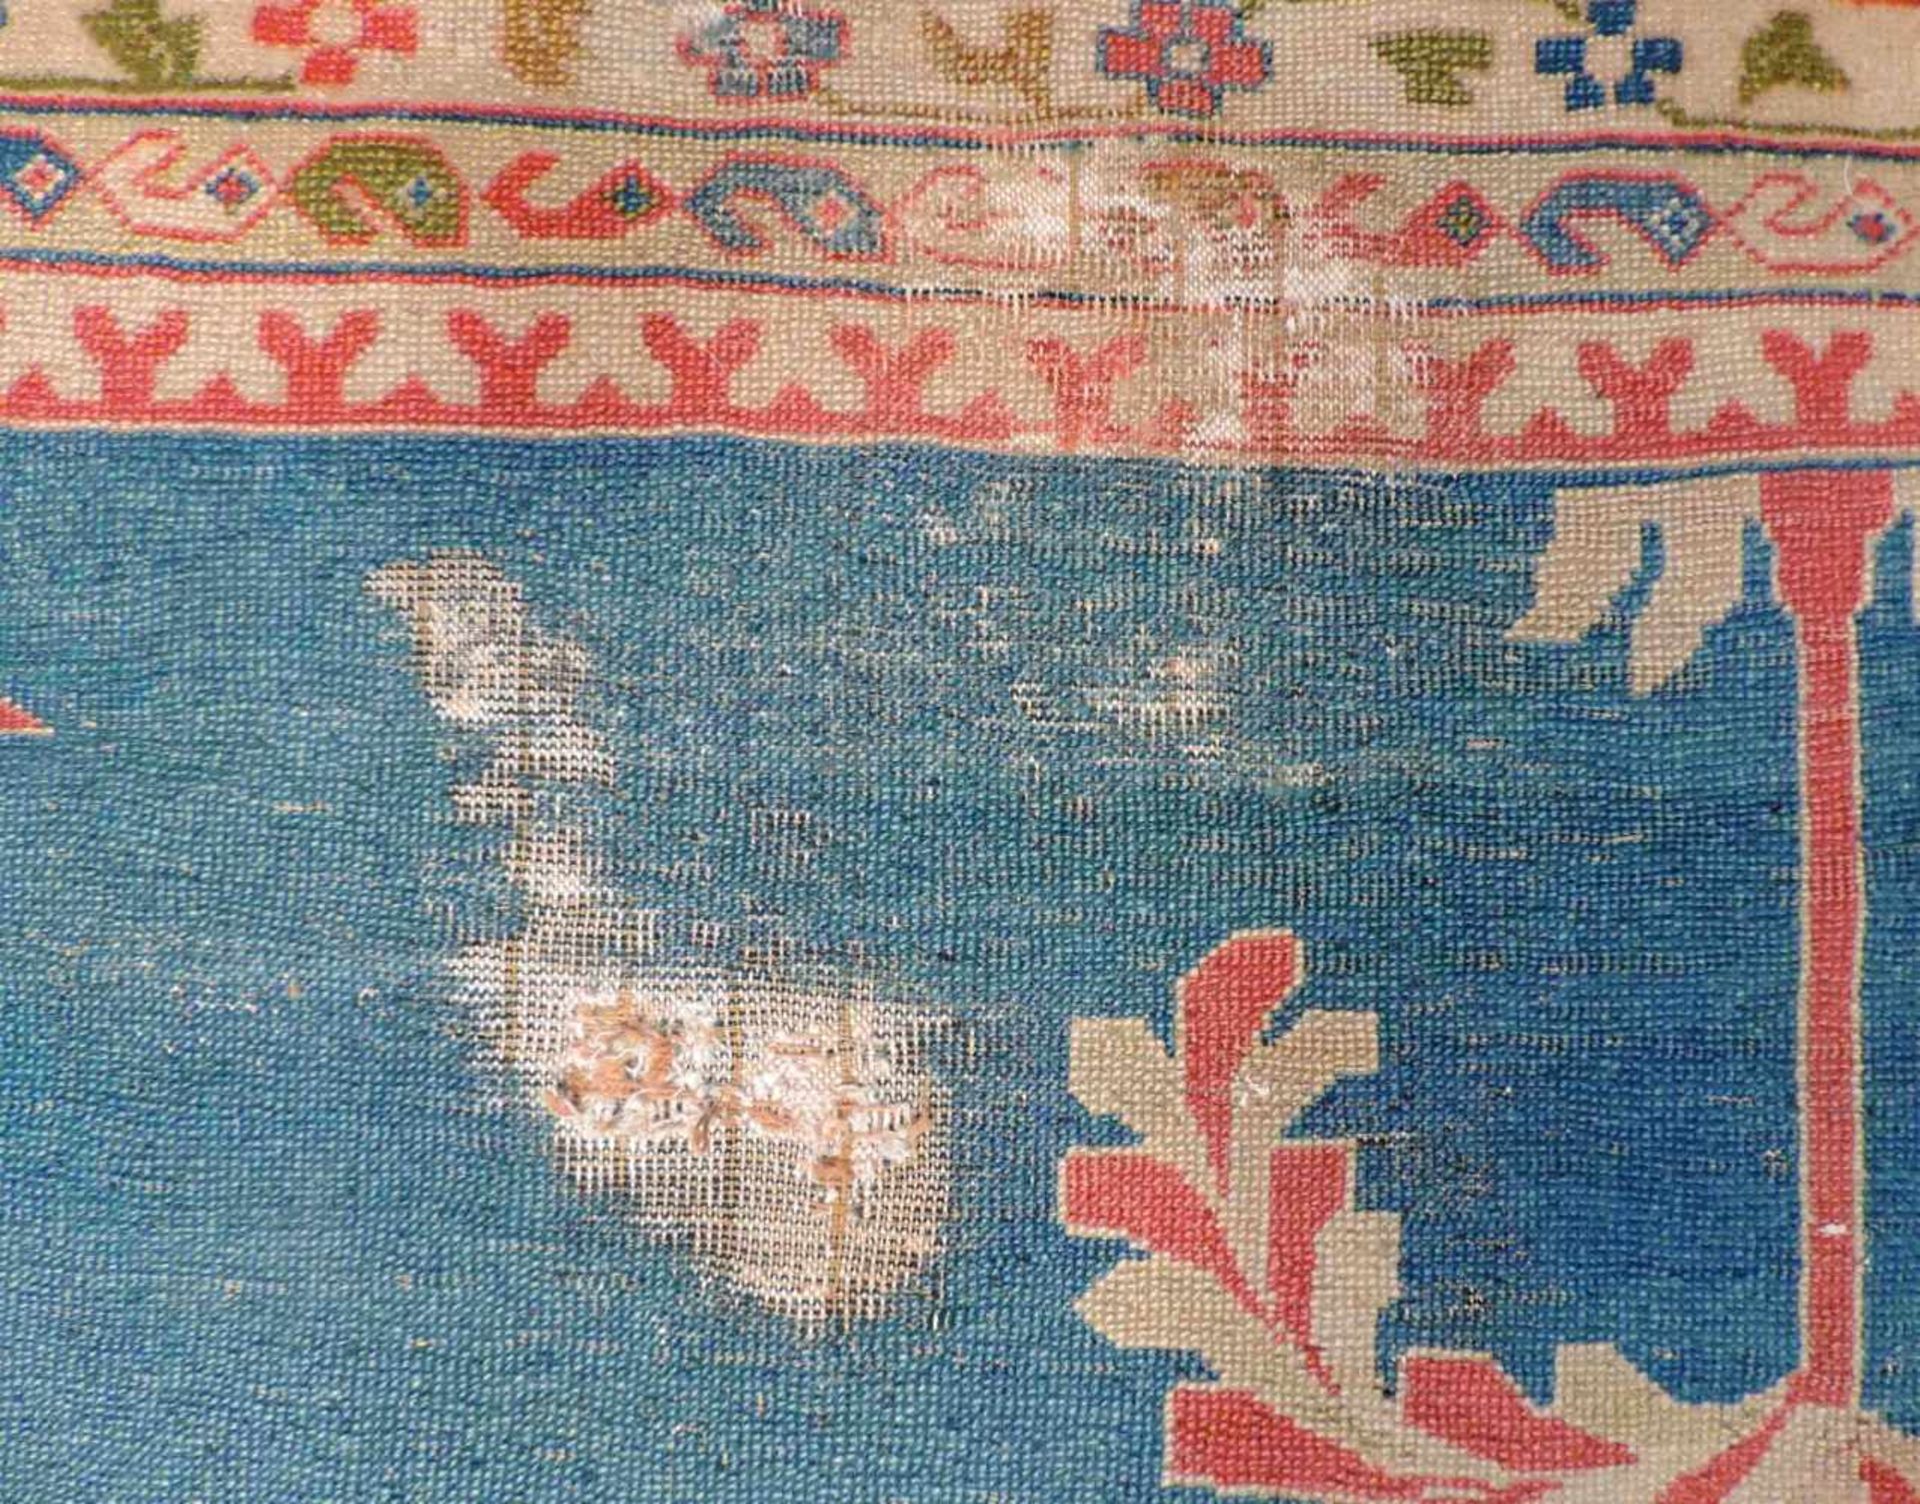 Smyrna Carpet, probably Turkey. Antique, around 1900. - Bild 2 aus 11